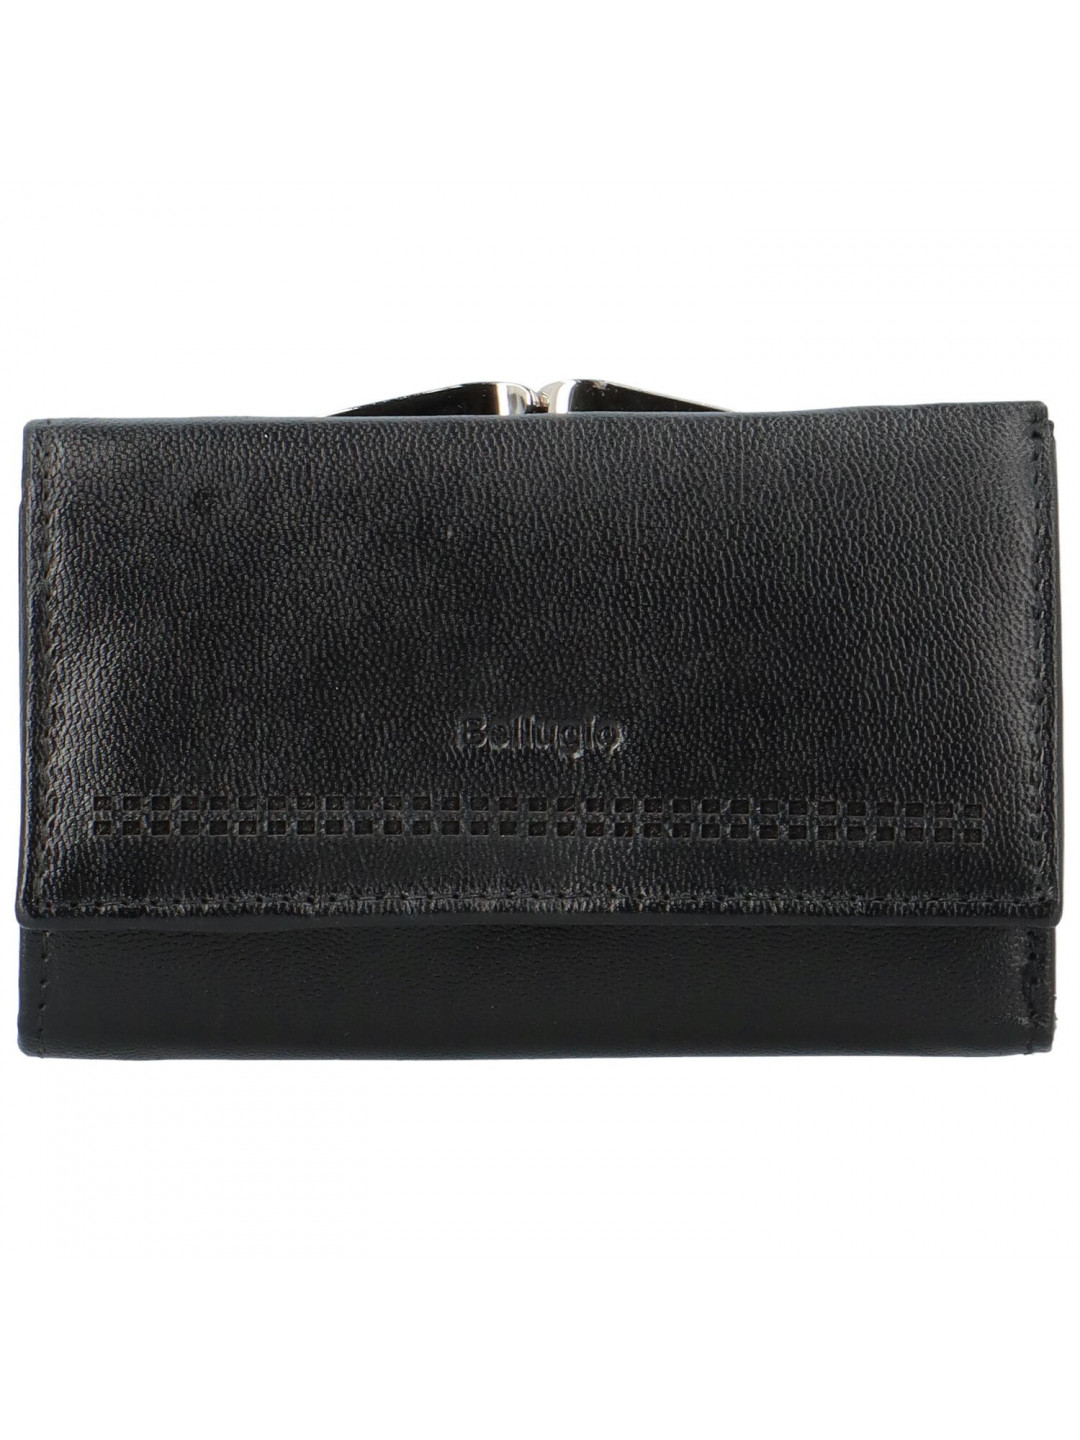 Dámská kožená peněženka Bellugio Ambra černá